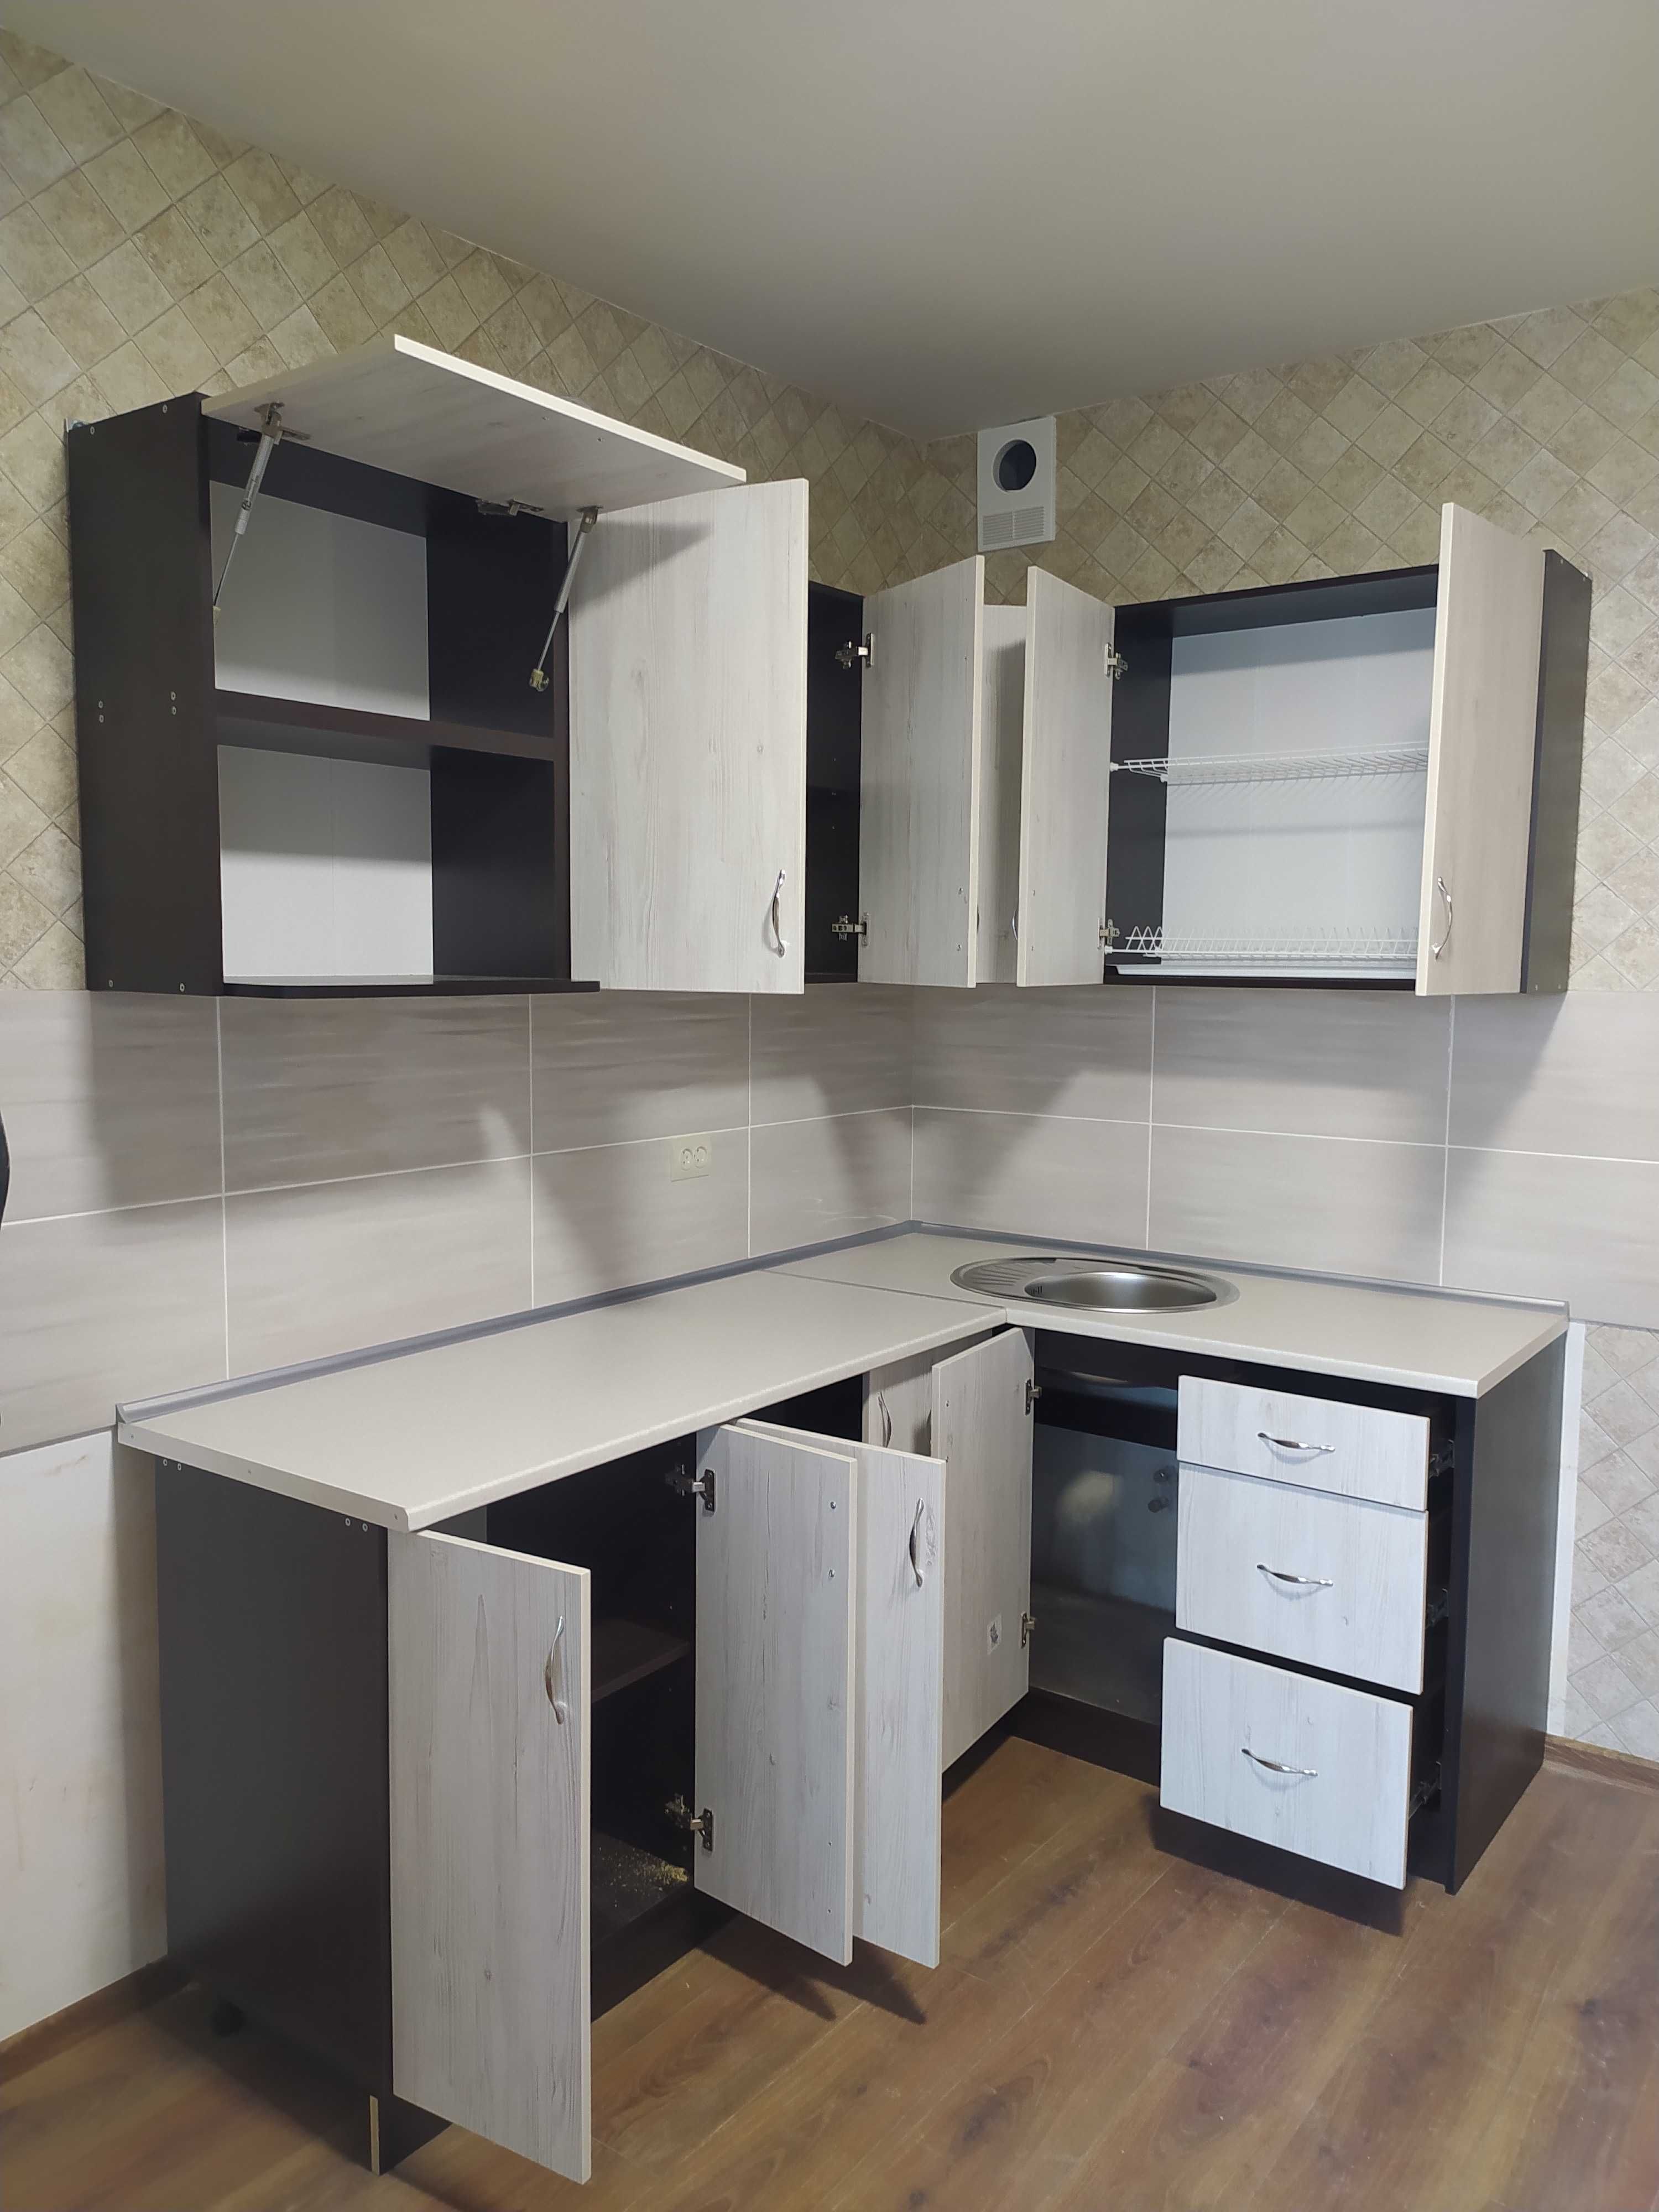 Услуги частного мастера, отделка и ремонт квартир в Киеве